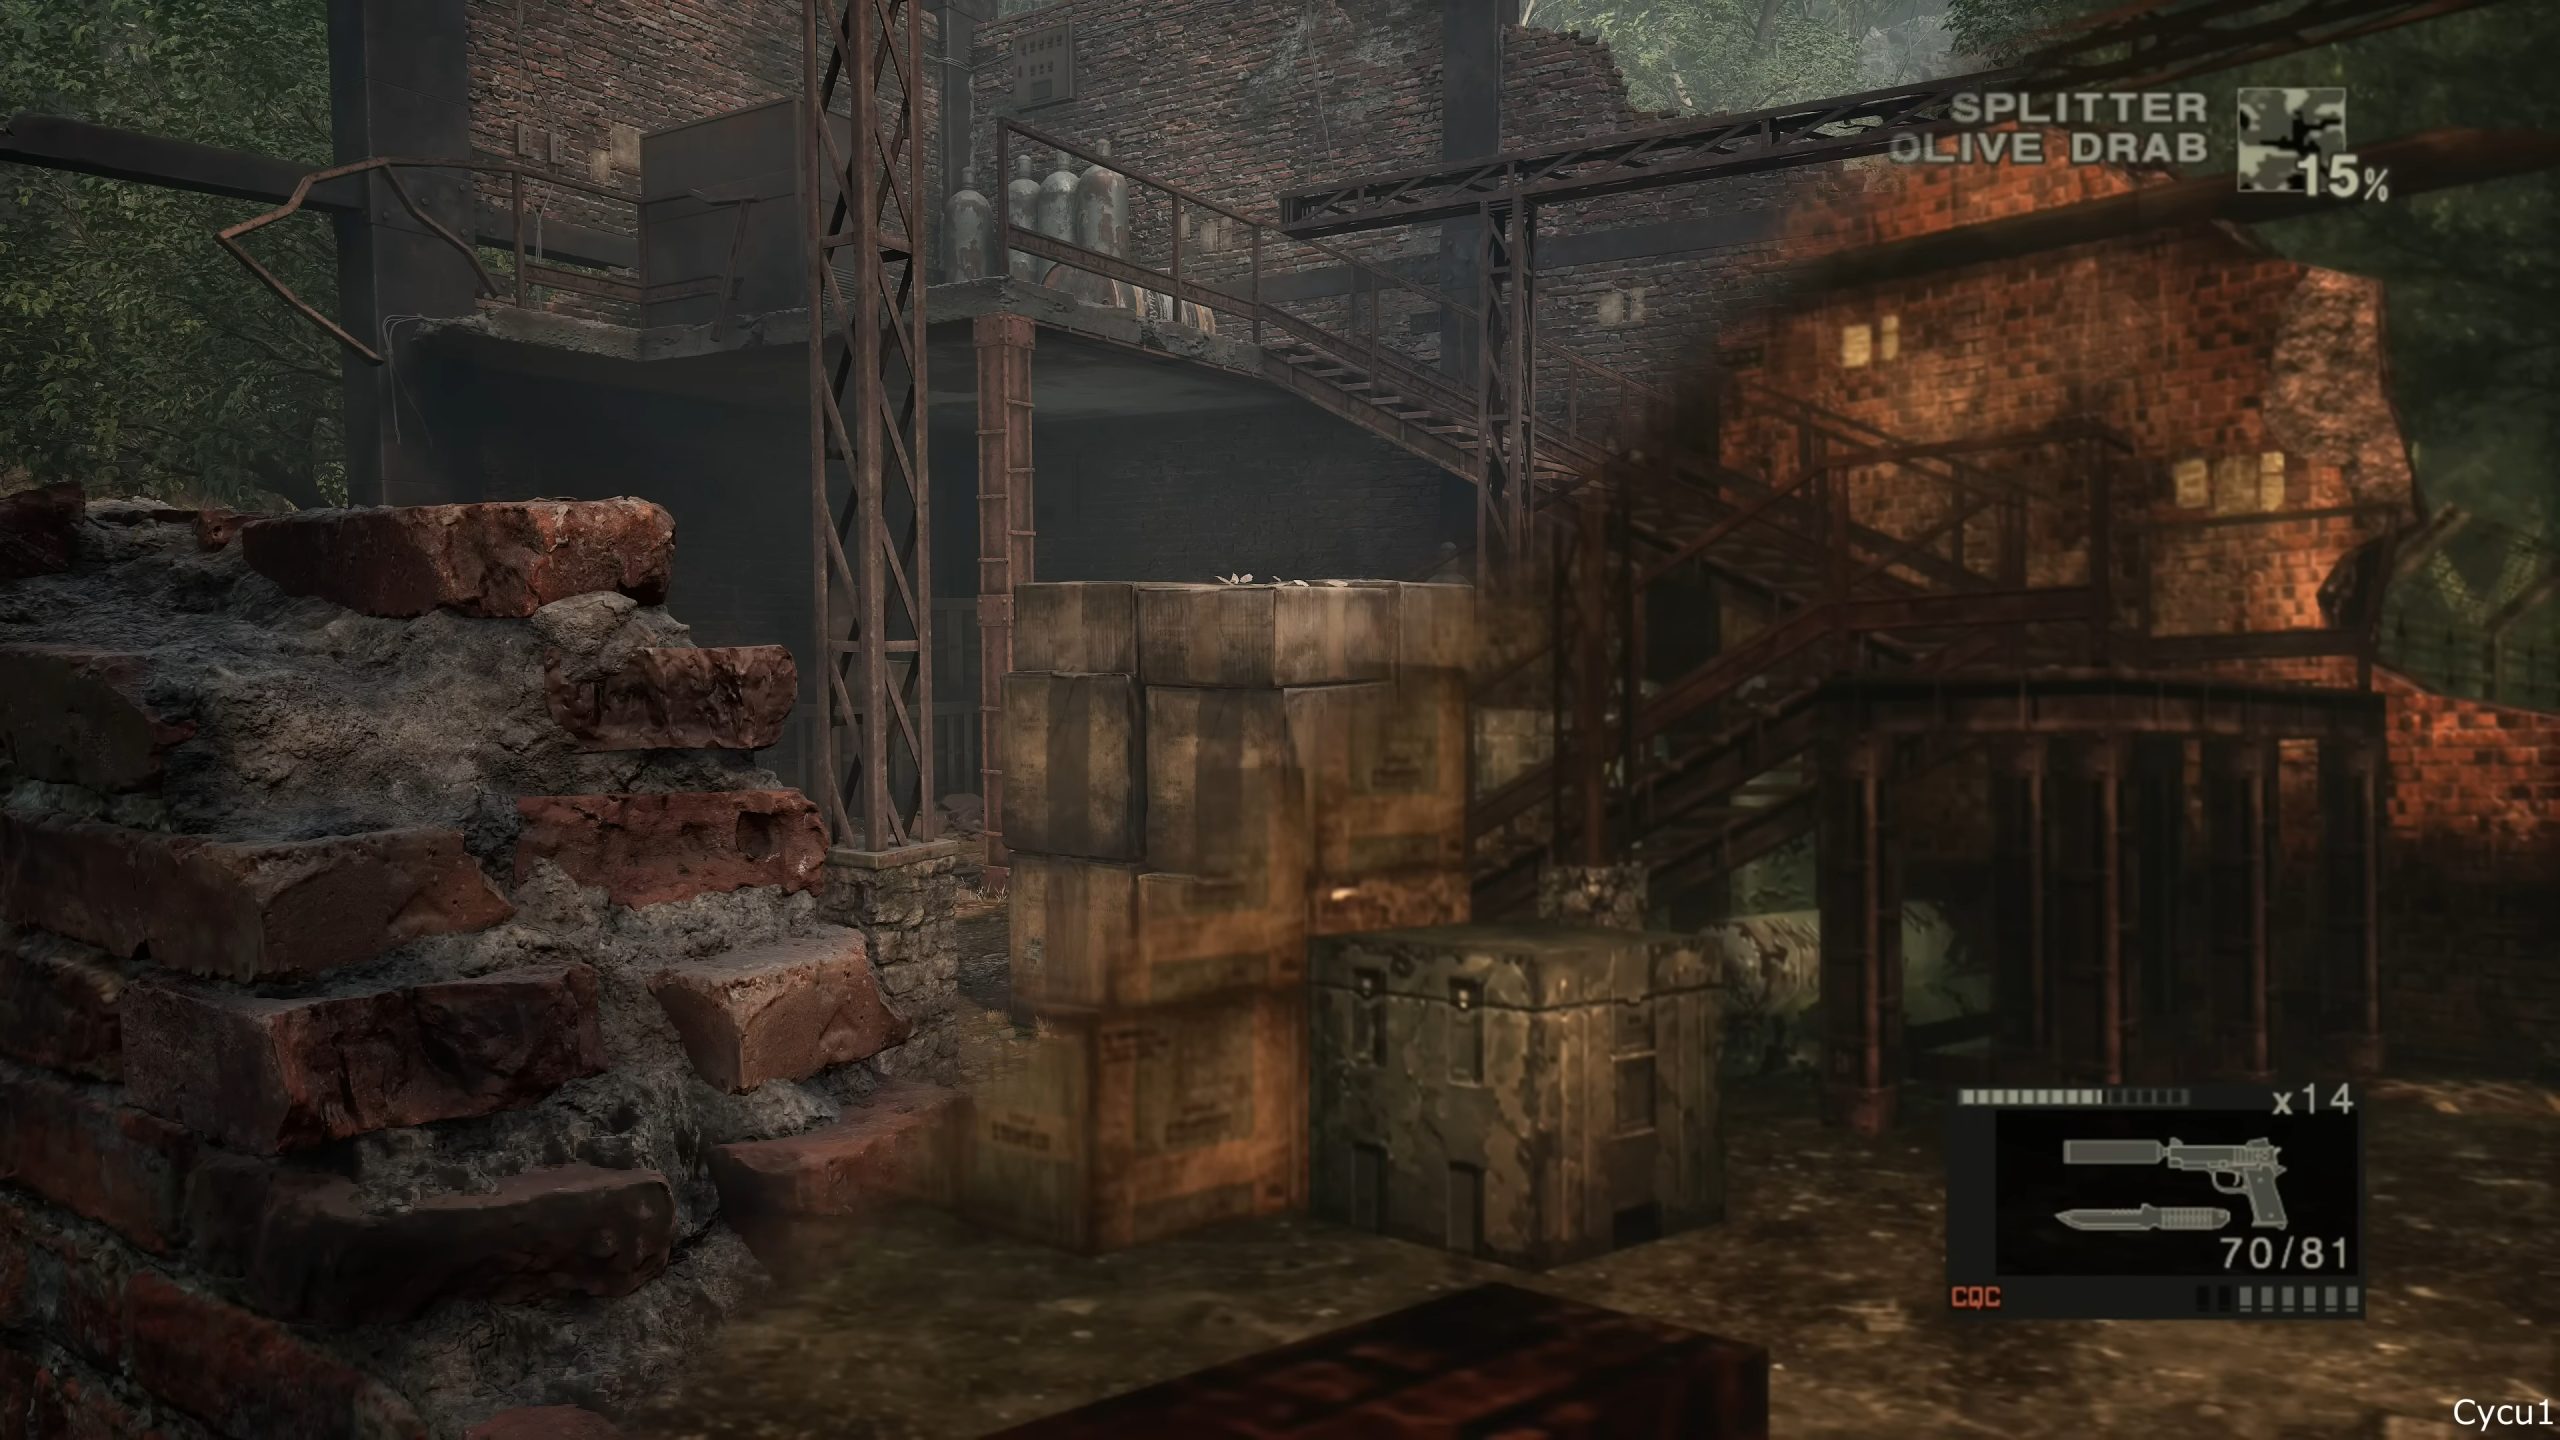 Captura de imagem mostra duas fotos do mesmo lugar no jogo Metal Gear Solid: Snake Eater, comparando a cena do remake com a do jogo original